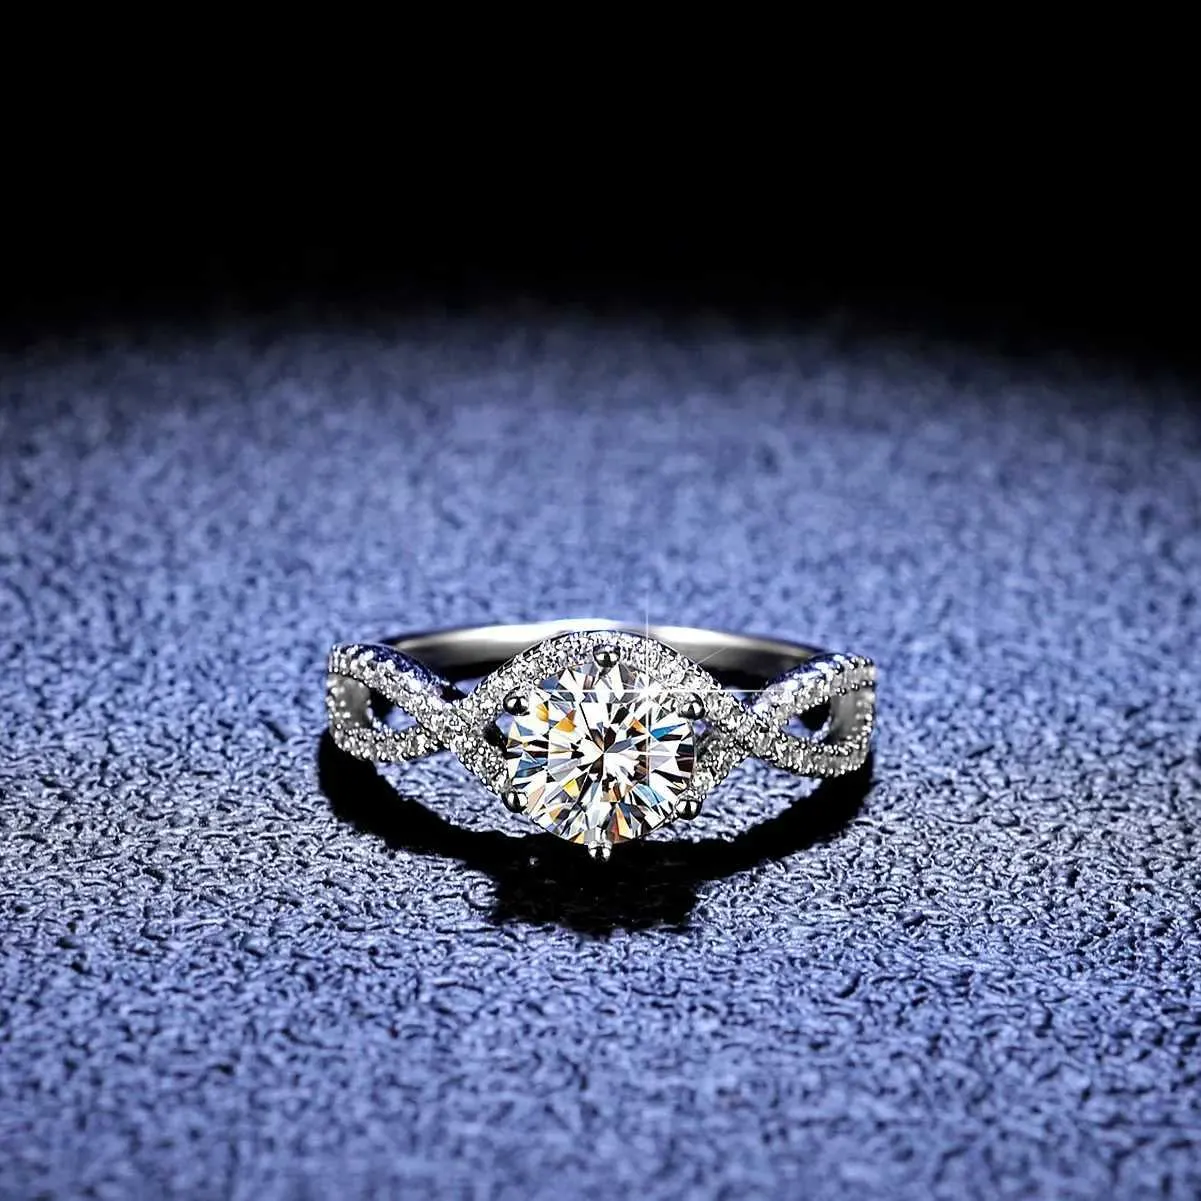 Solitaire Ring Luxury Pt950 Платиновое предложение кольцо настоящая высокая ясность D Даймовый бриллиант кольца для обручального кольца для женщин D240419